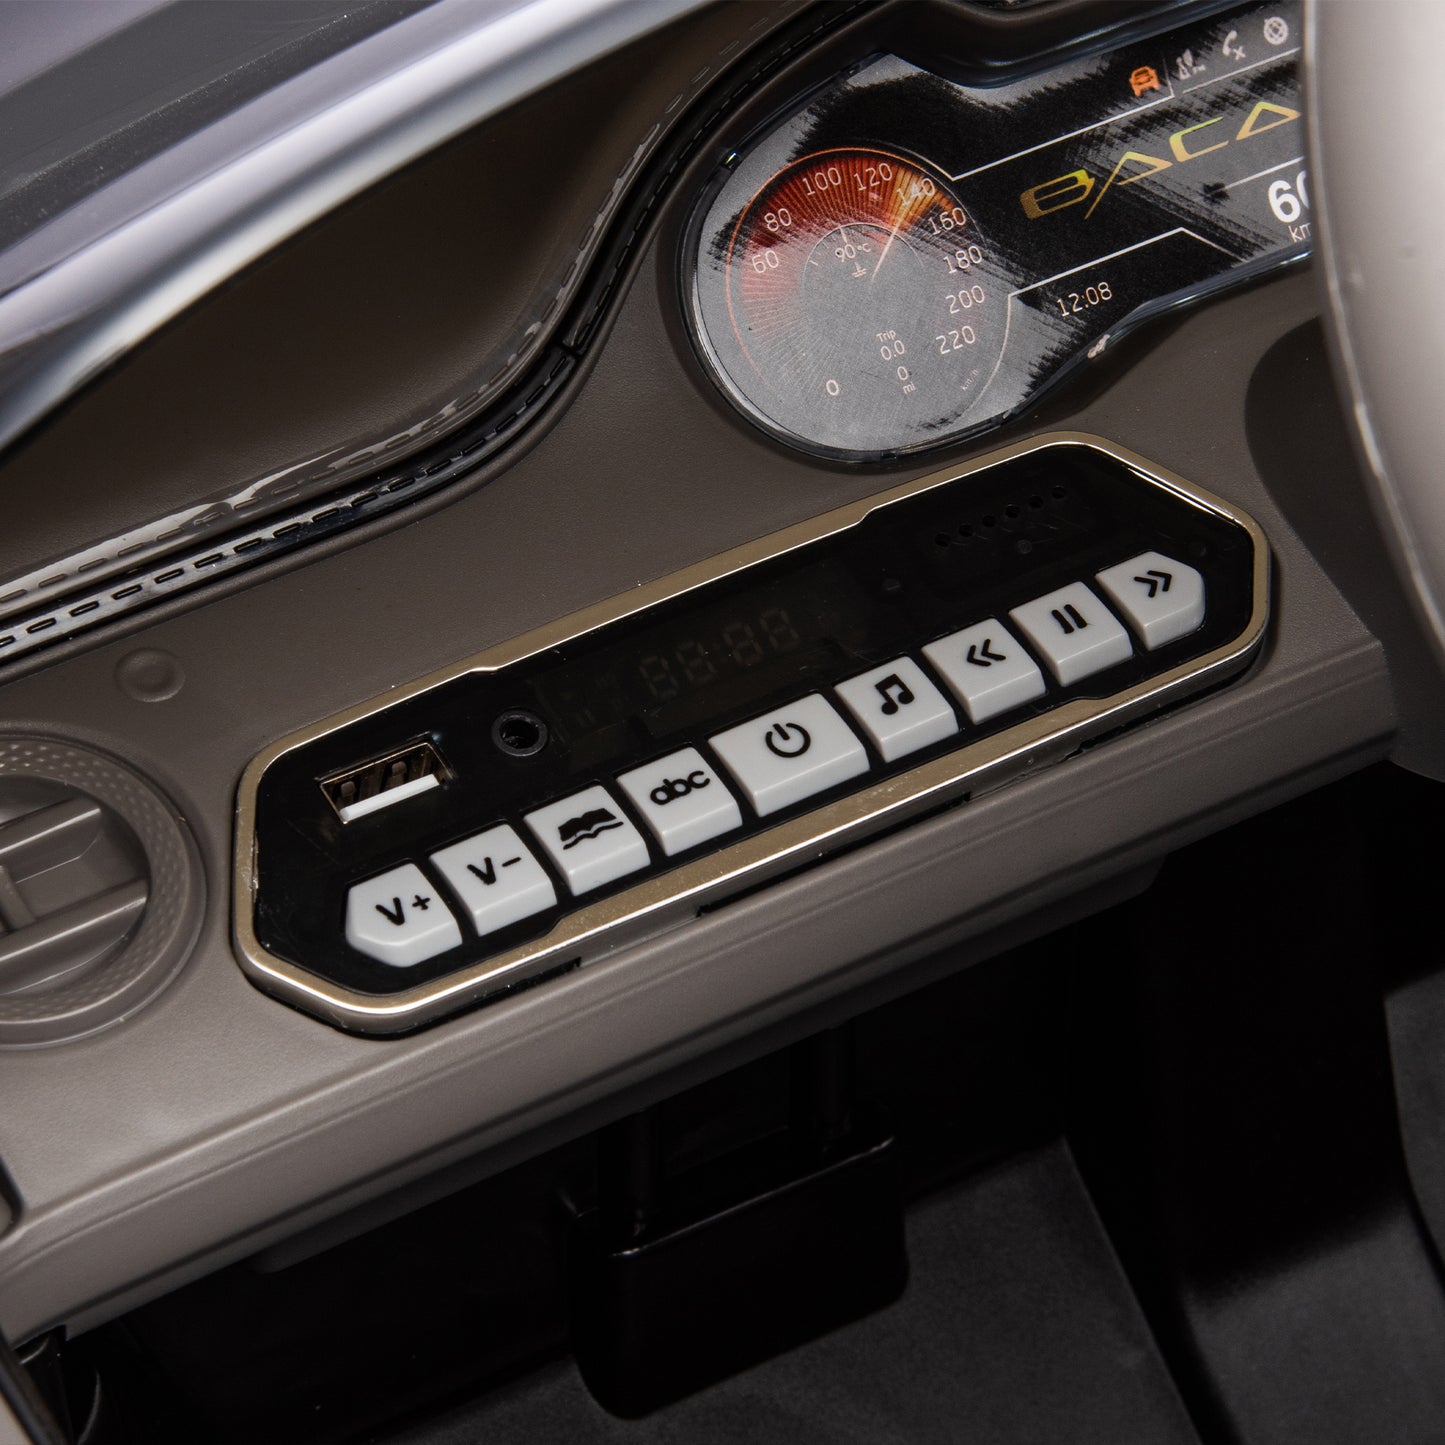 Lizenzierter Bentley Mulsanne, 12v7A Kinderauto zum Aufsitzen, 2,4 GW/Elternfernbedienung, Elektroauto für Kinder, drei Geschwindigkeiten einstellbar, Leistungsanzeige, USB, MP3, Bluetooth, LED-Licht, Dreipunkt-Sicherheitsgurt